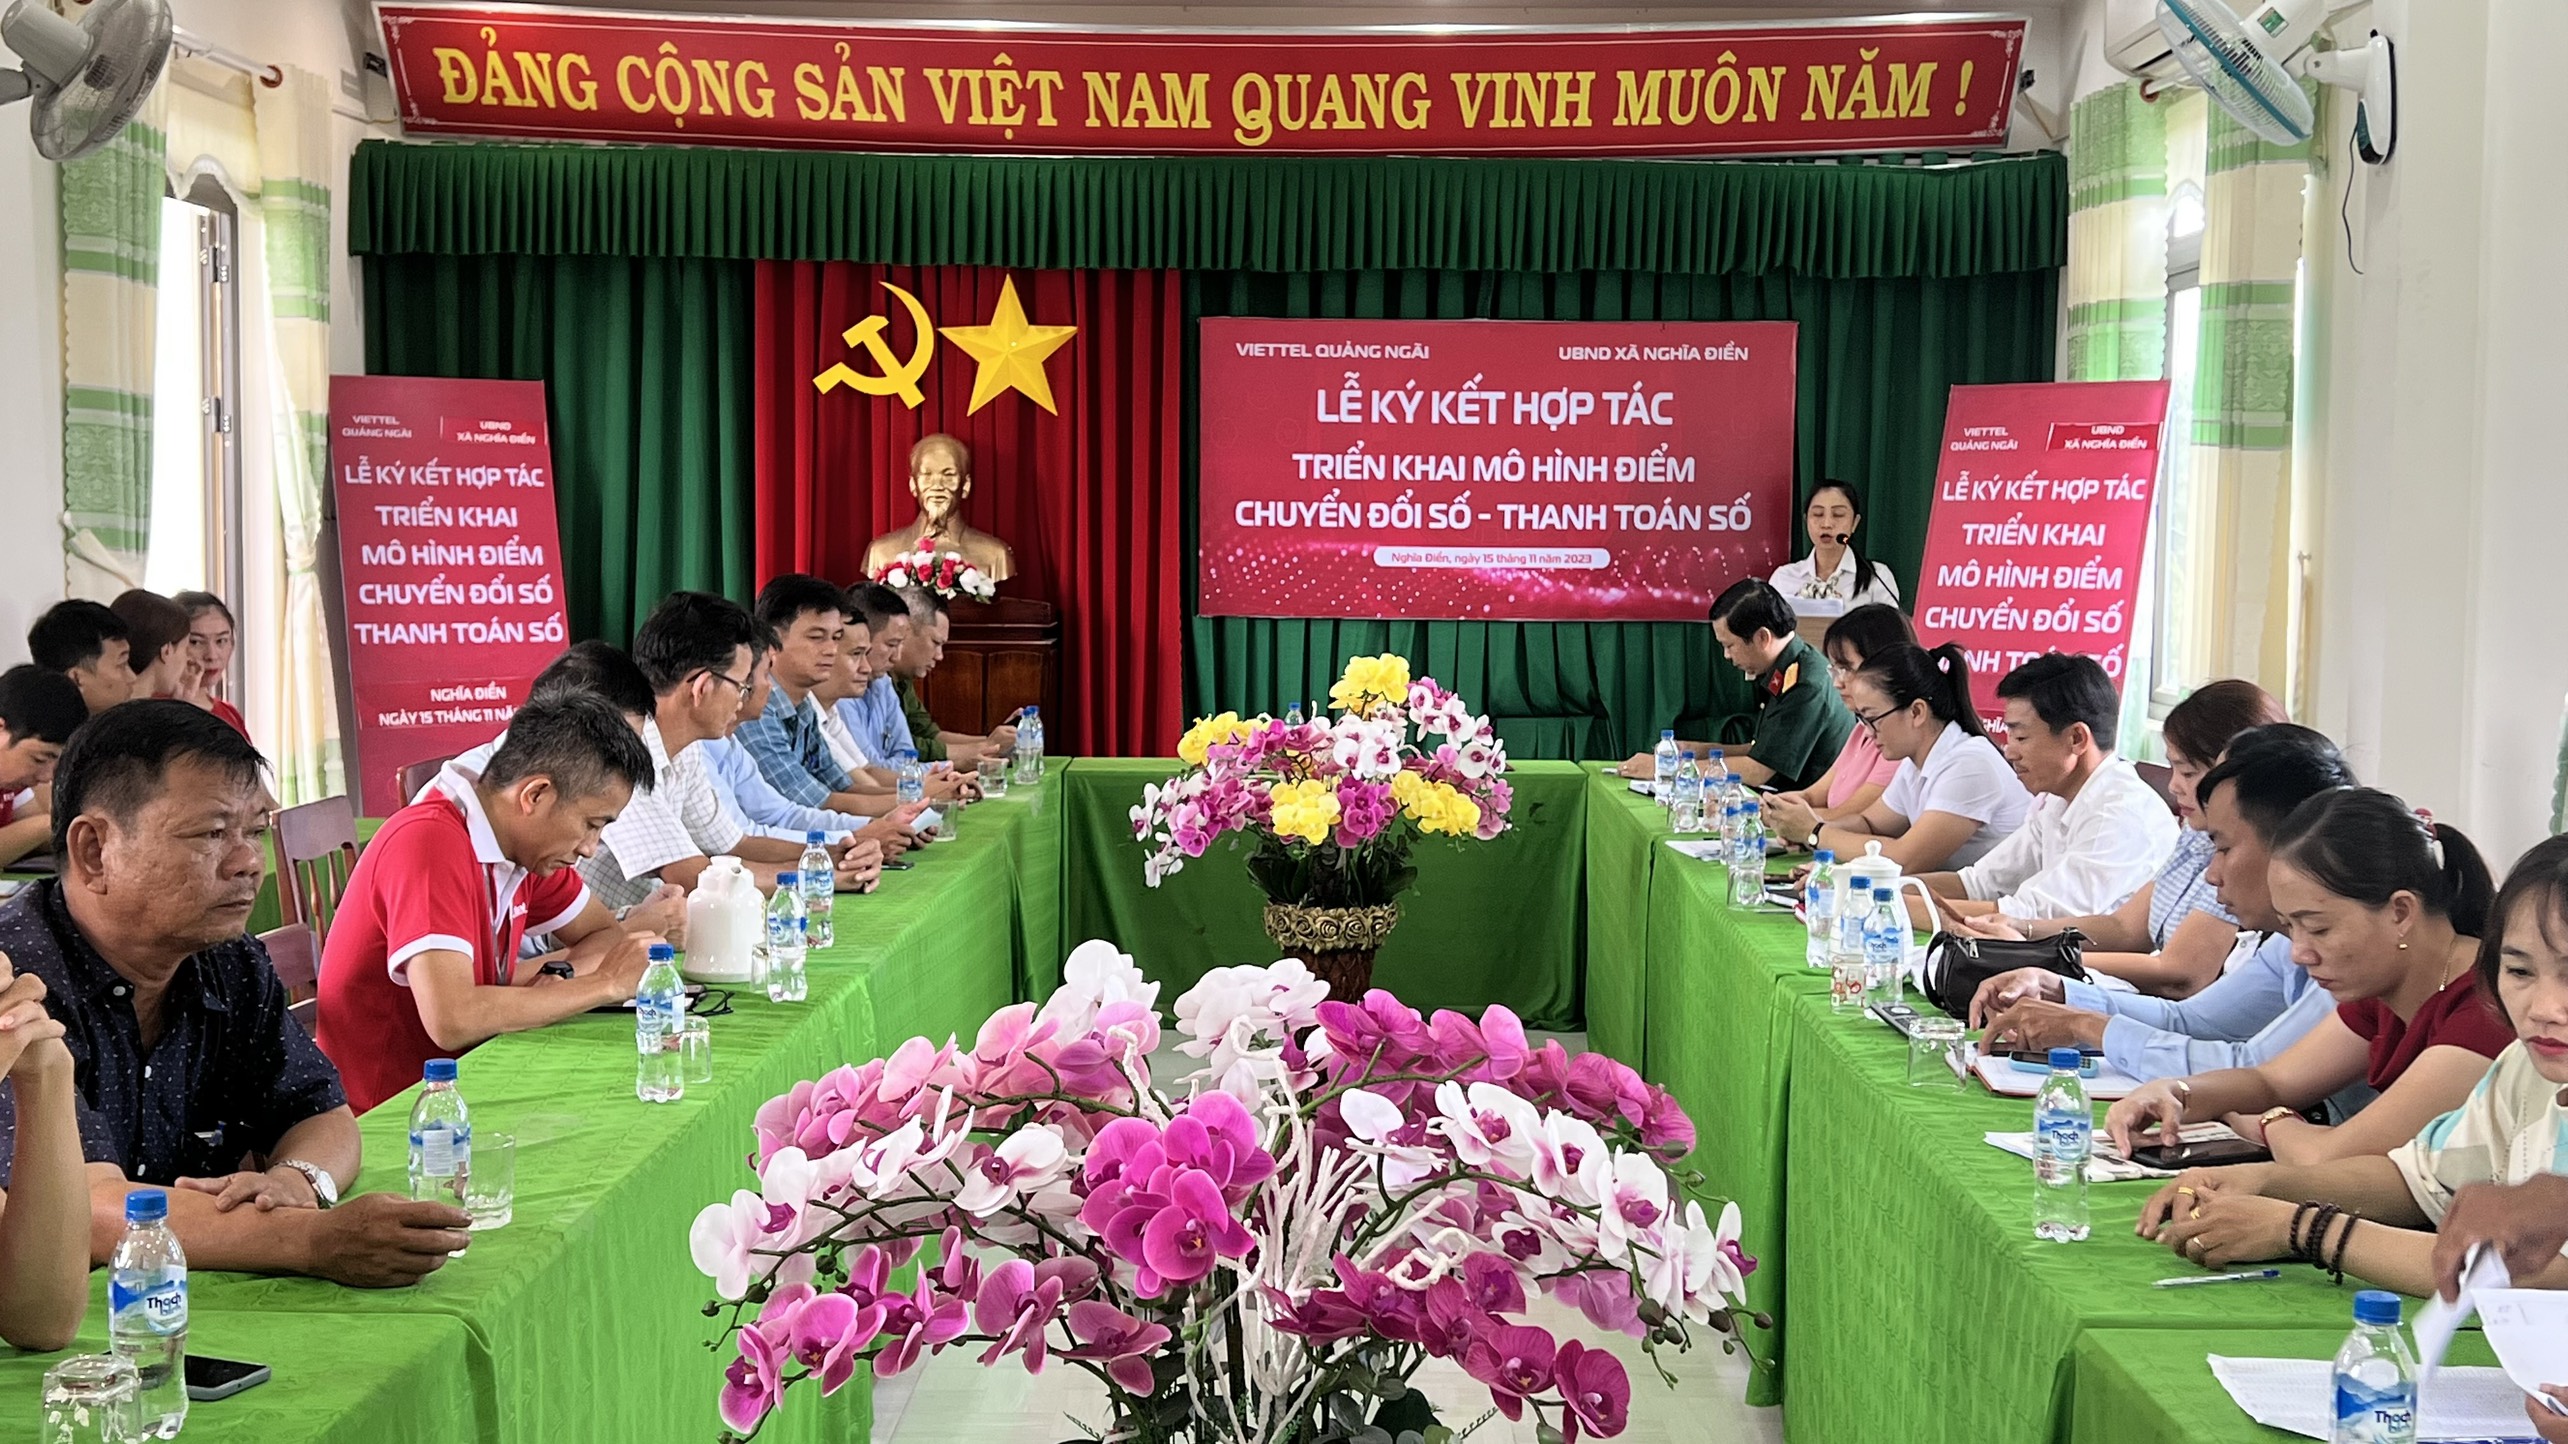 UBND xã Nghĩa Điền phối hợp với Viettel Quảng Ngãi tổ chức Lễ ký kết hợp tác triển khai mô hình điểm Chuyển đổi số - Thanh toán số.